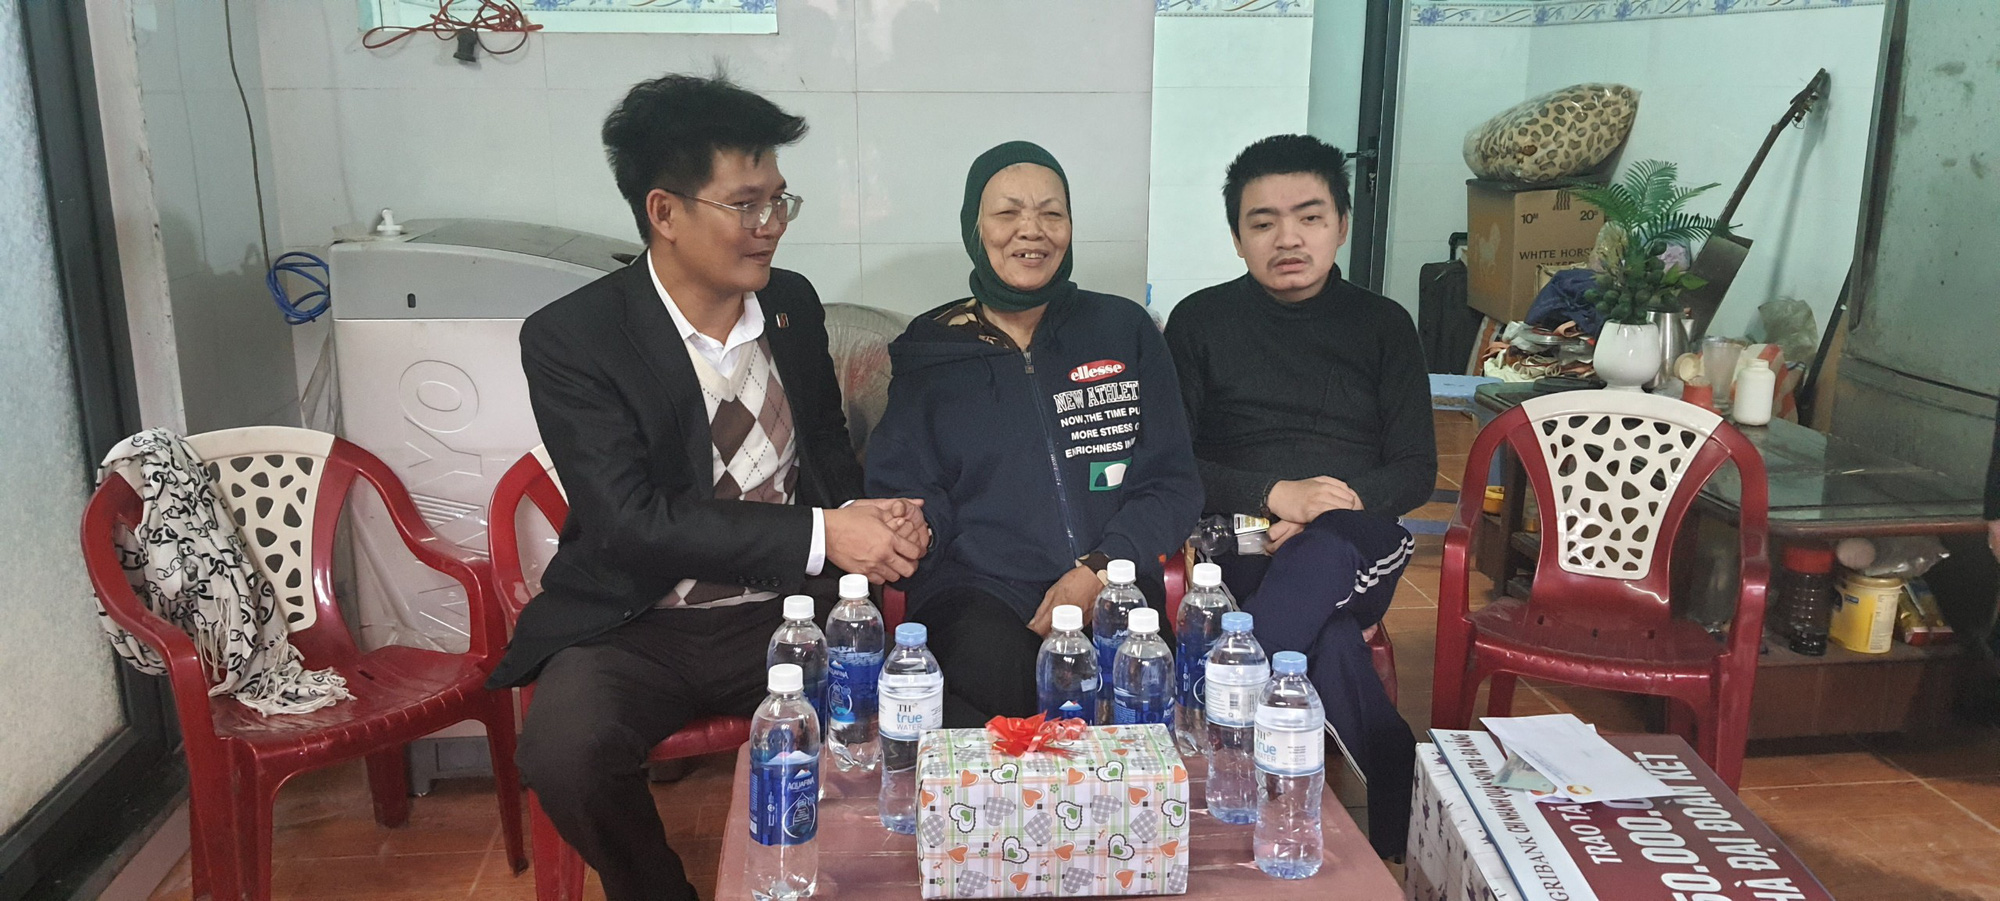 Đà Nẵng: Agribank Sơn Trà tài trợ xây dựng nhà đại đoàn kết cho gia đình khó khăn - Ảnh 3.